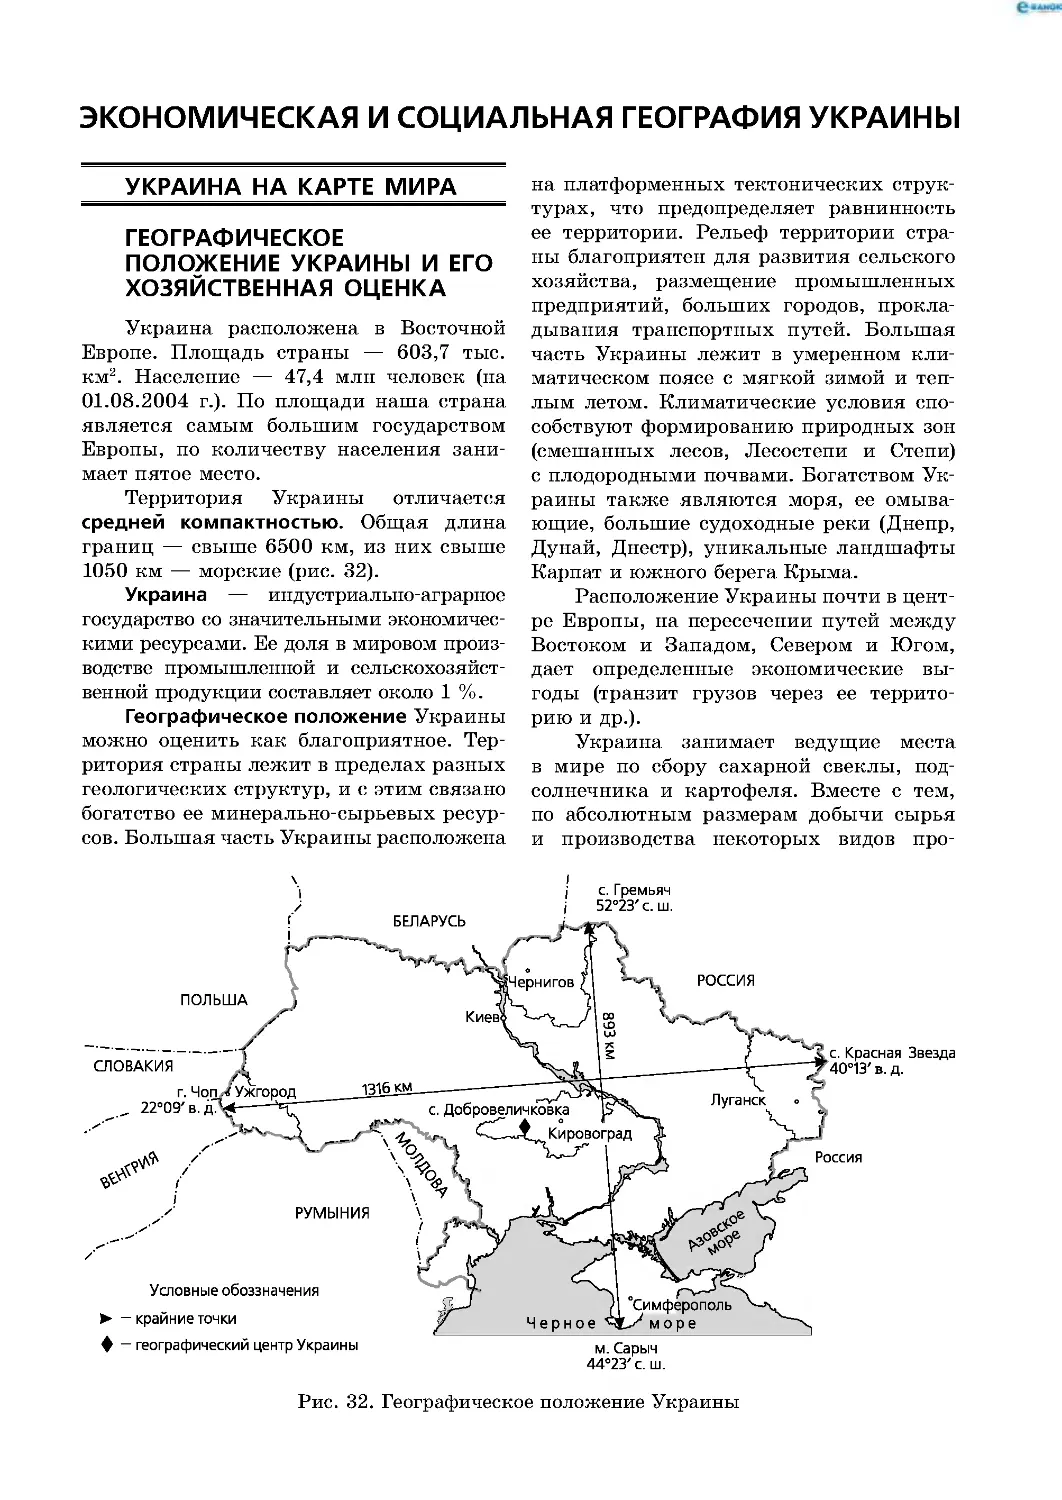 Экономическая и социальная
география Украины
Украина на карте мира